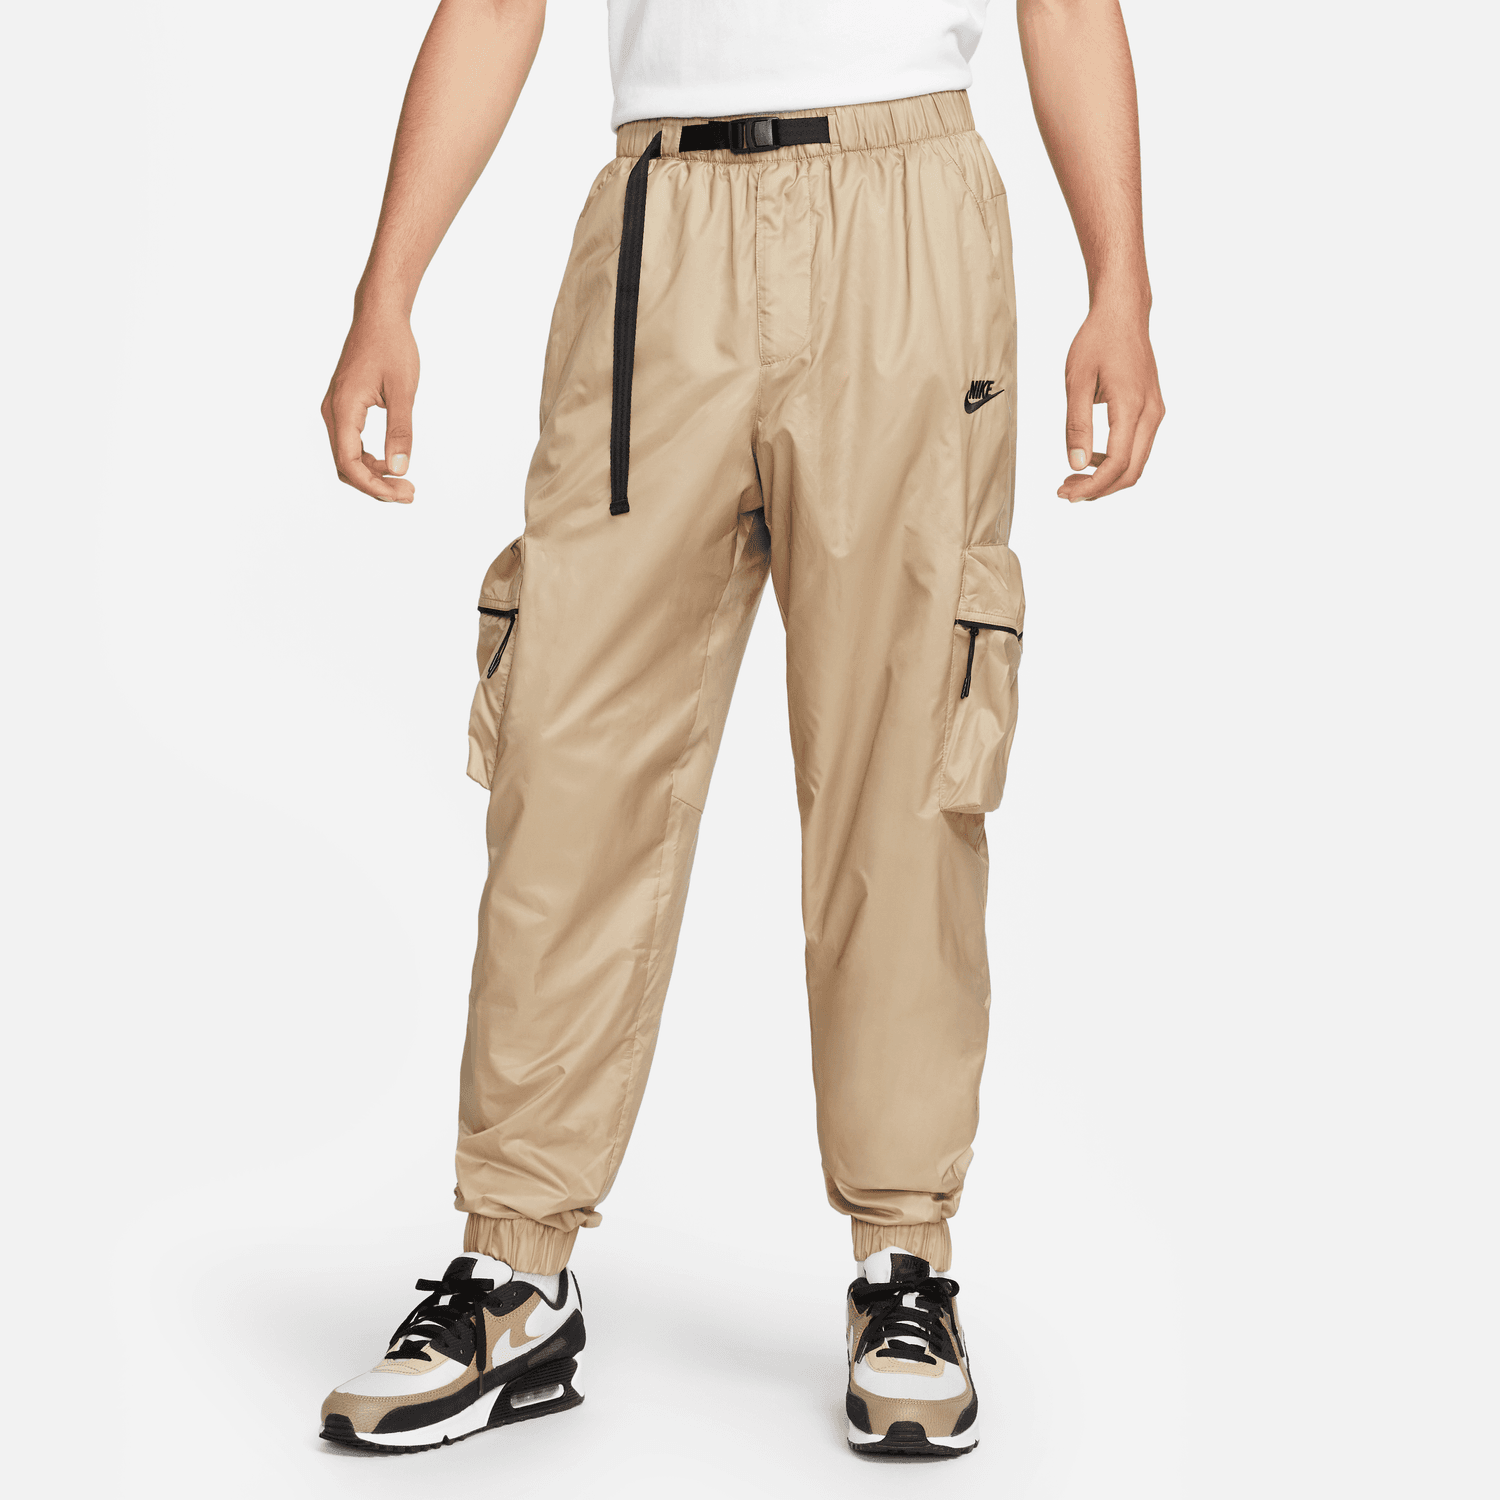 Pantalon Nike Tech - Beige/Noir